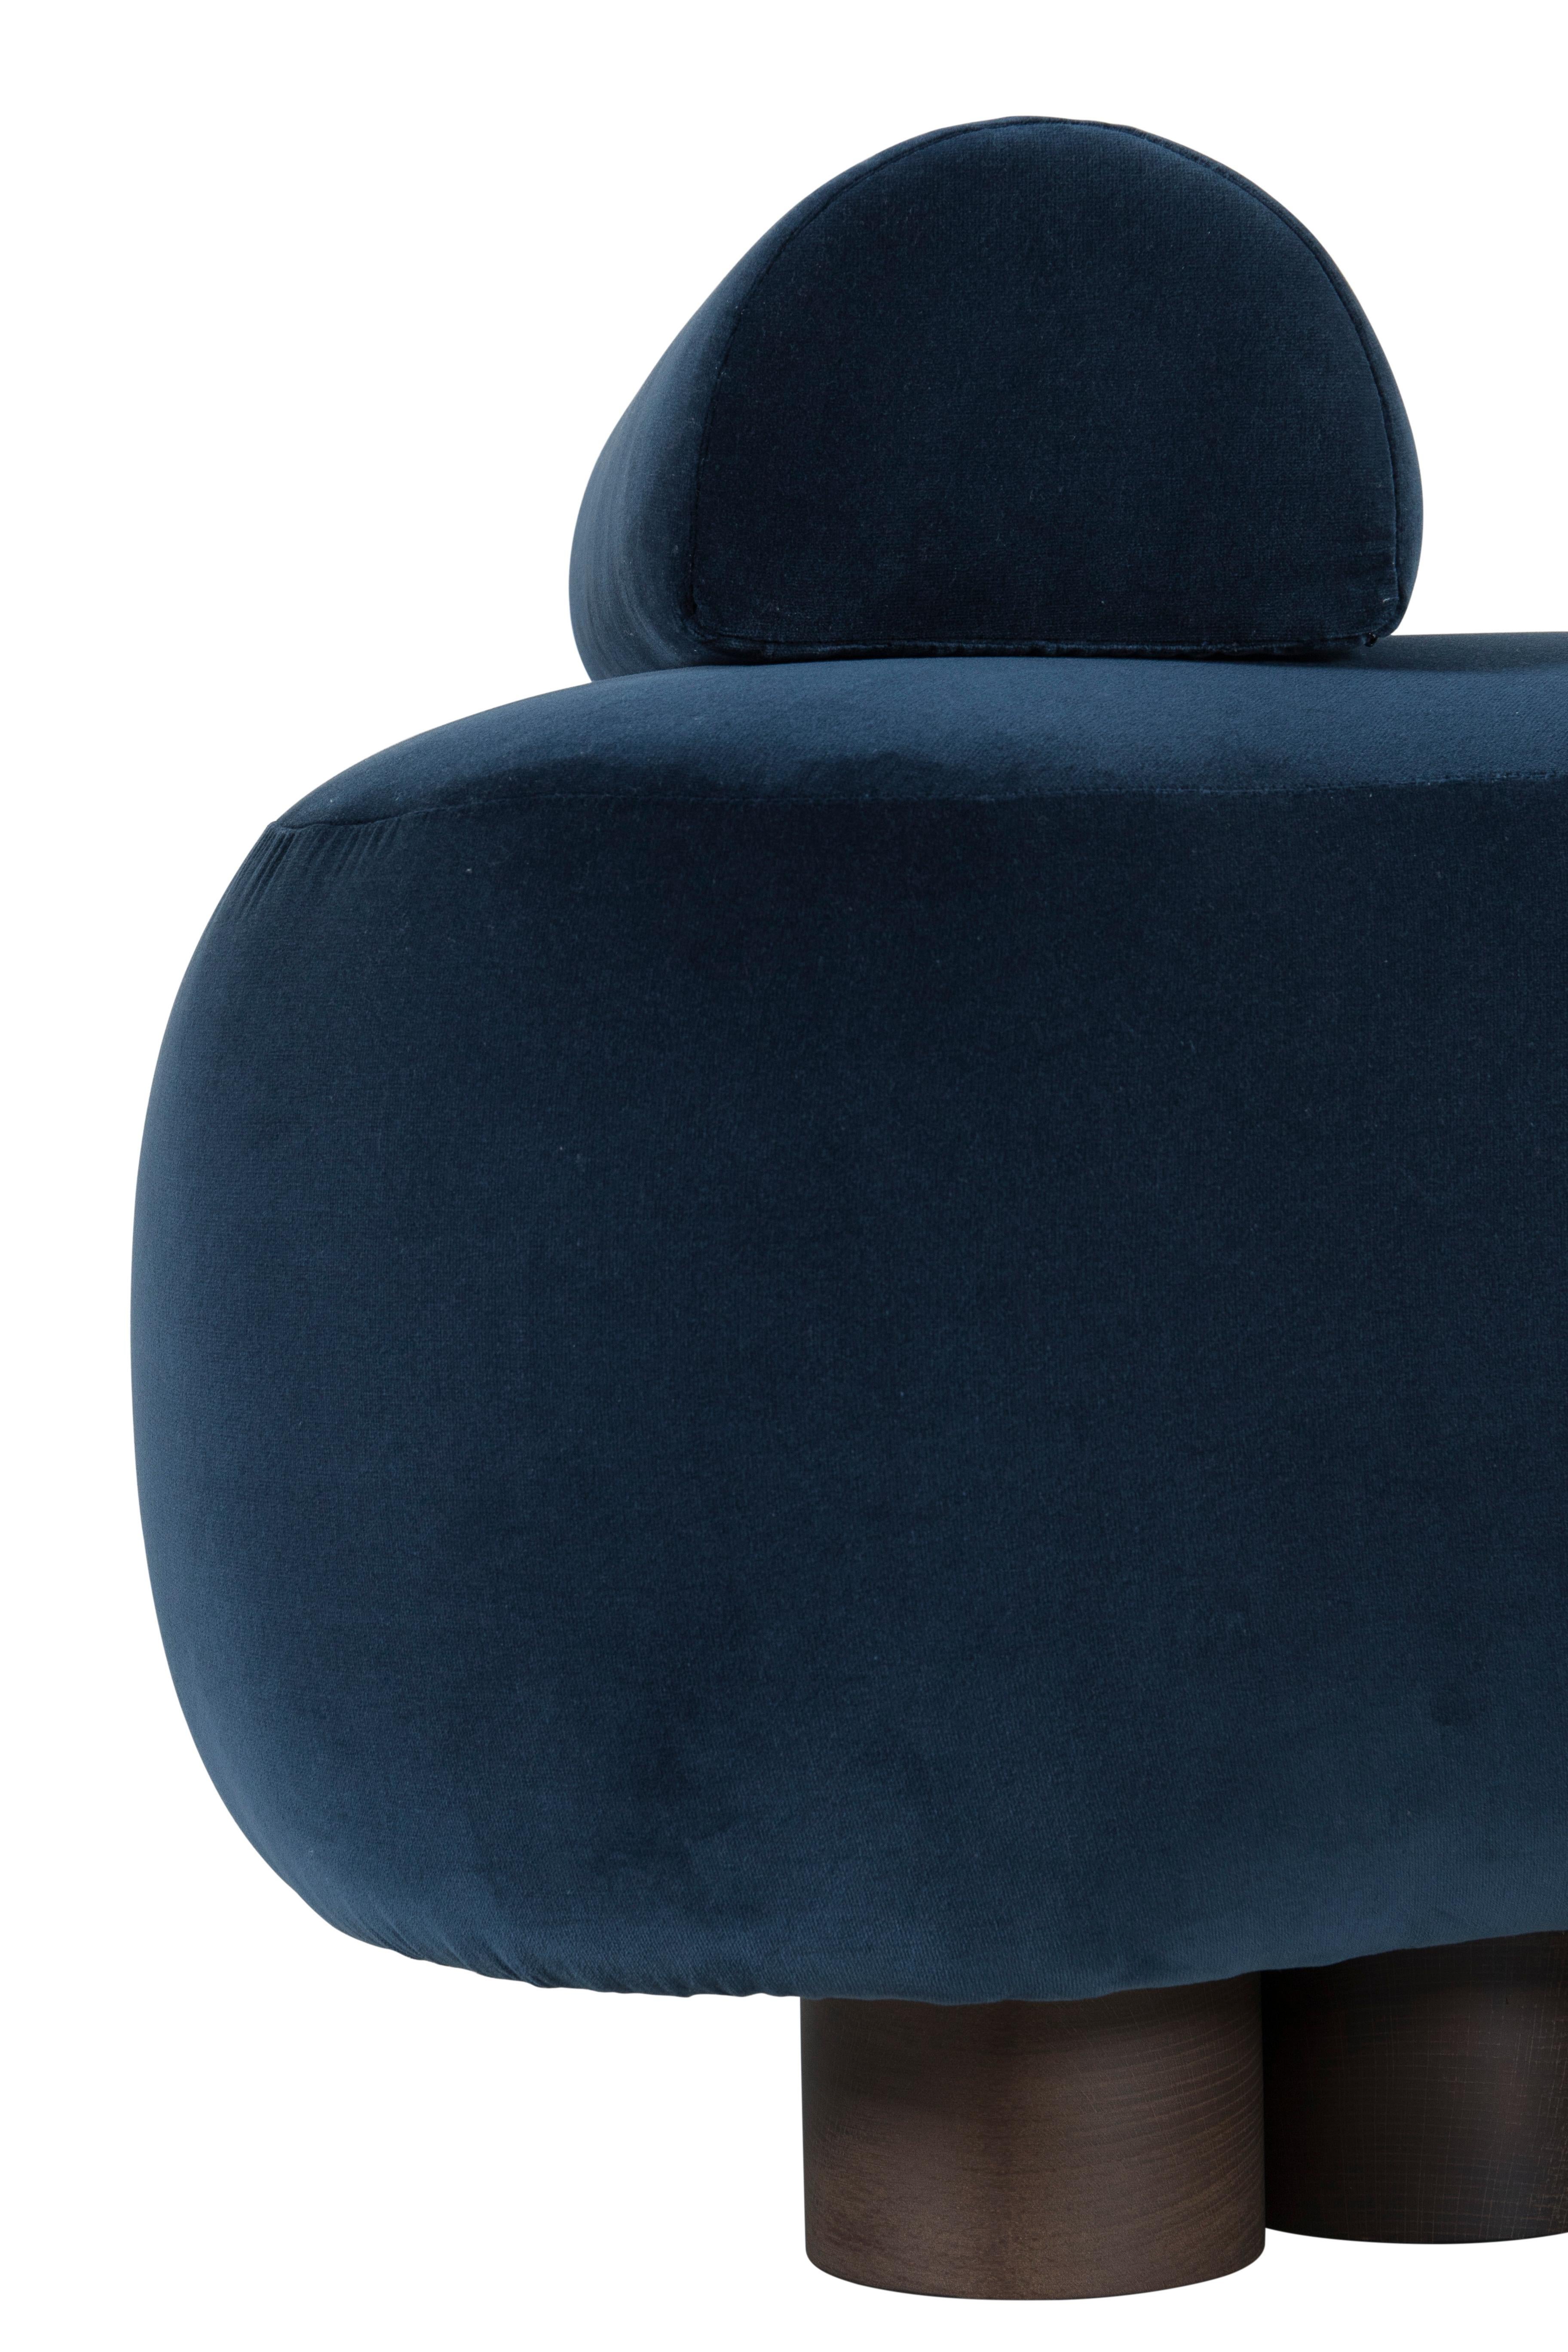 Modern Minho Day Bed. DEDAR Dark Blue Velvet, Handmade in Portugal by Greenapple For Sale 1